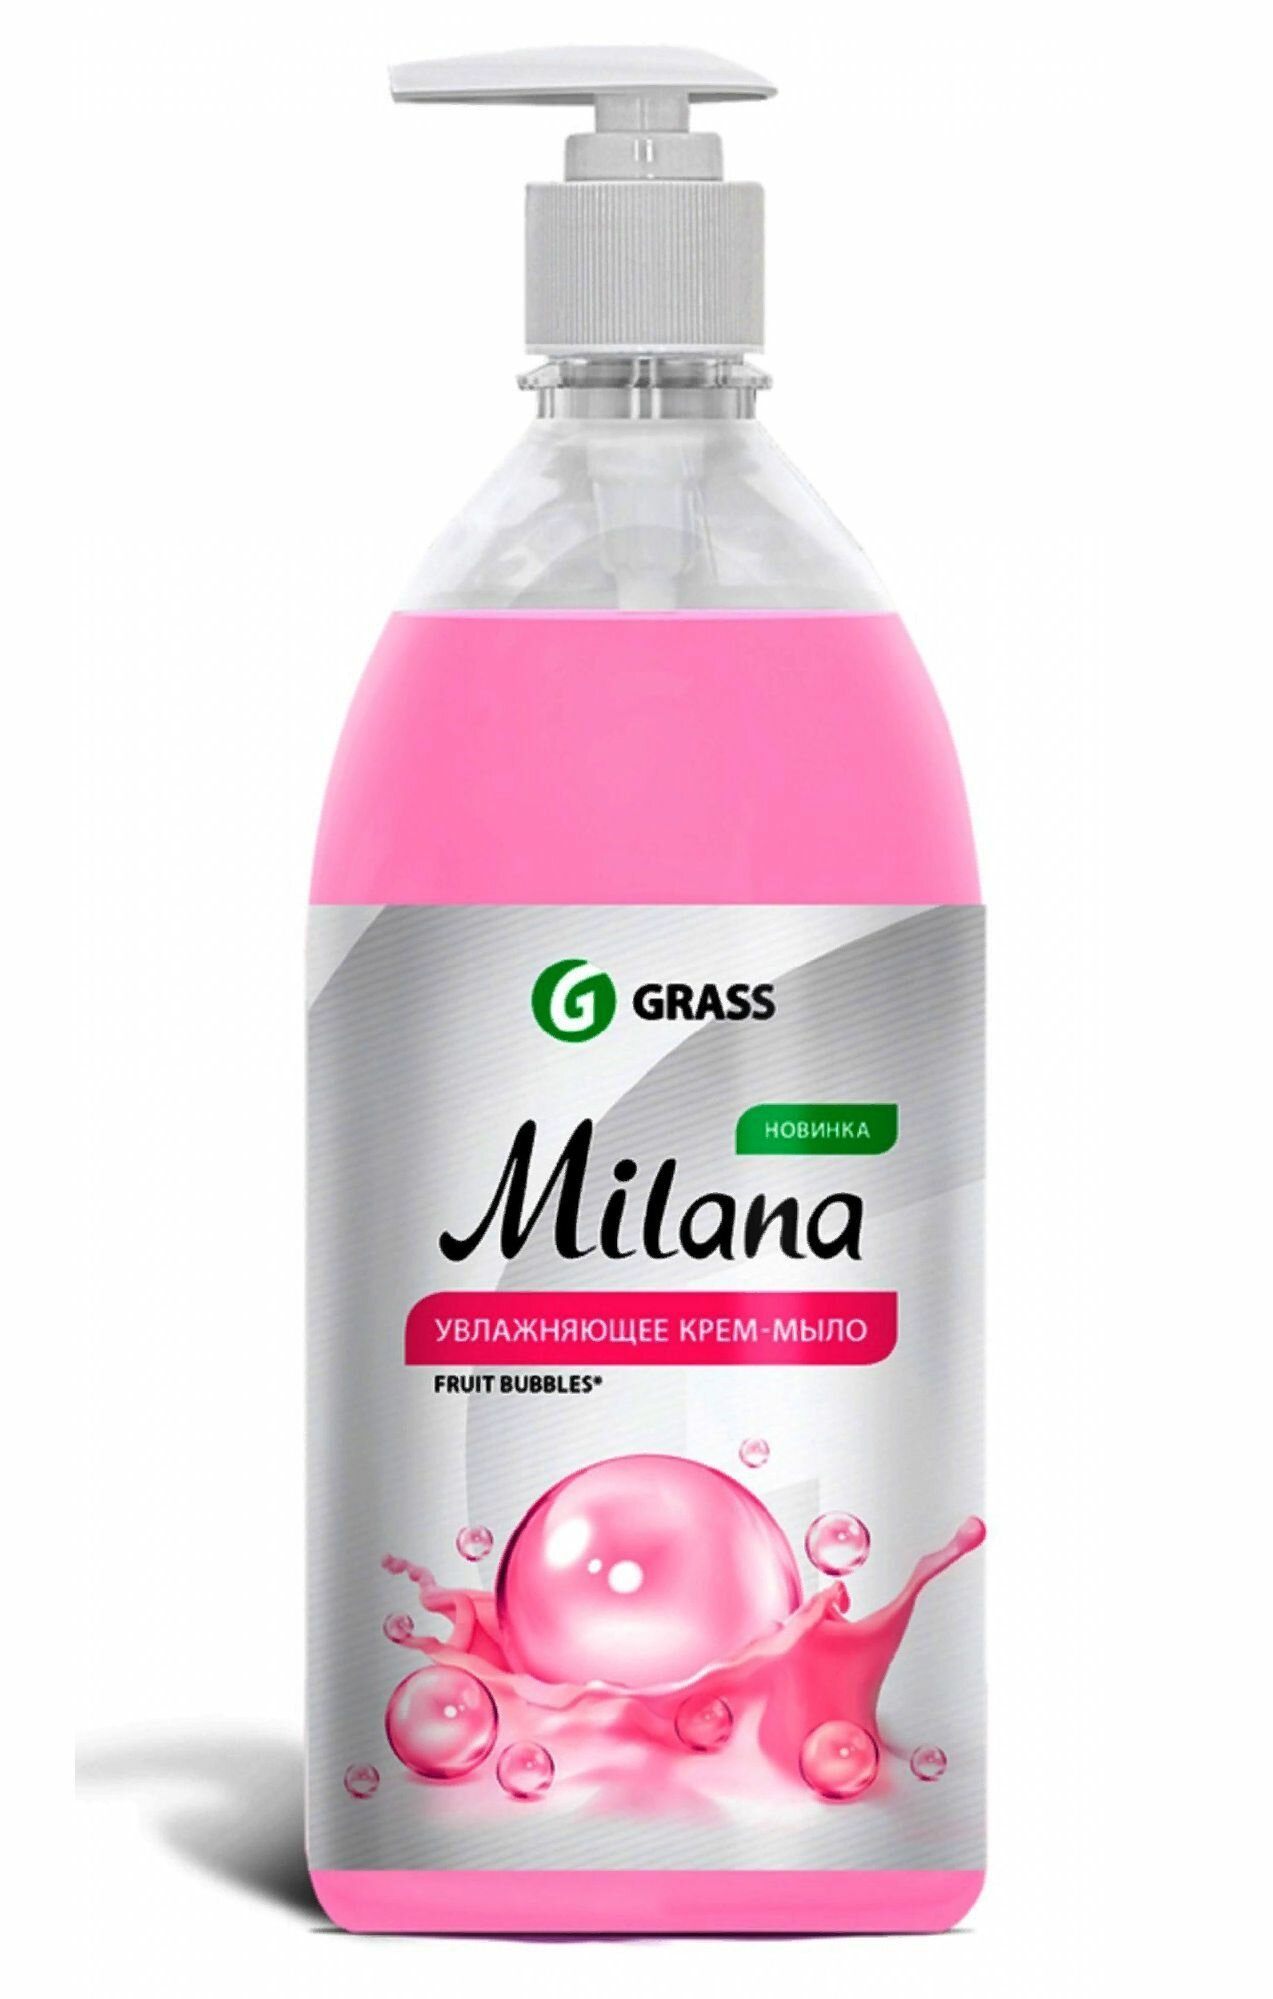 Grass Жидкое мыло для рук "Milana"Kids, Fruit bubbles, Антибактериальное, 300 мл, флакон с дозатором